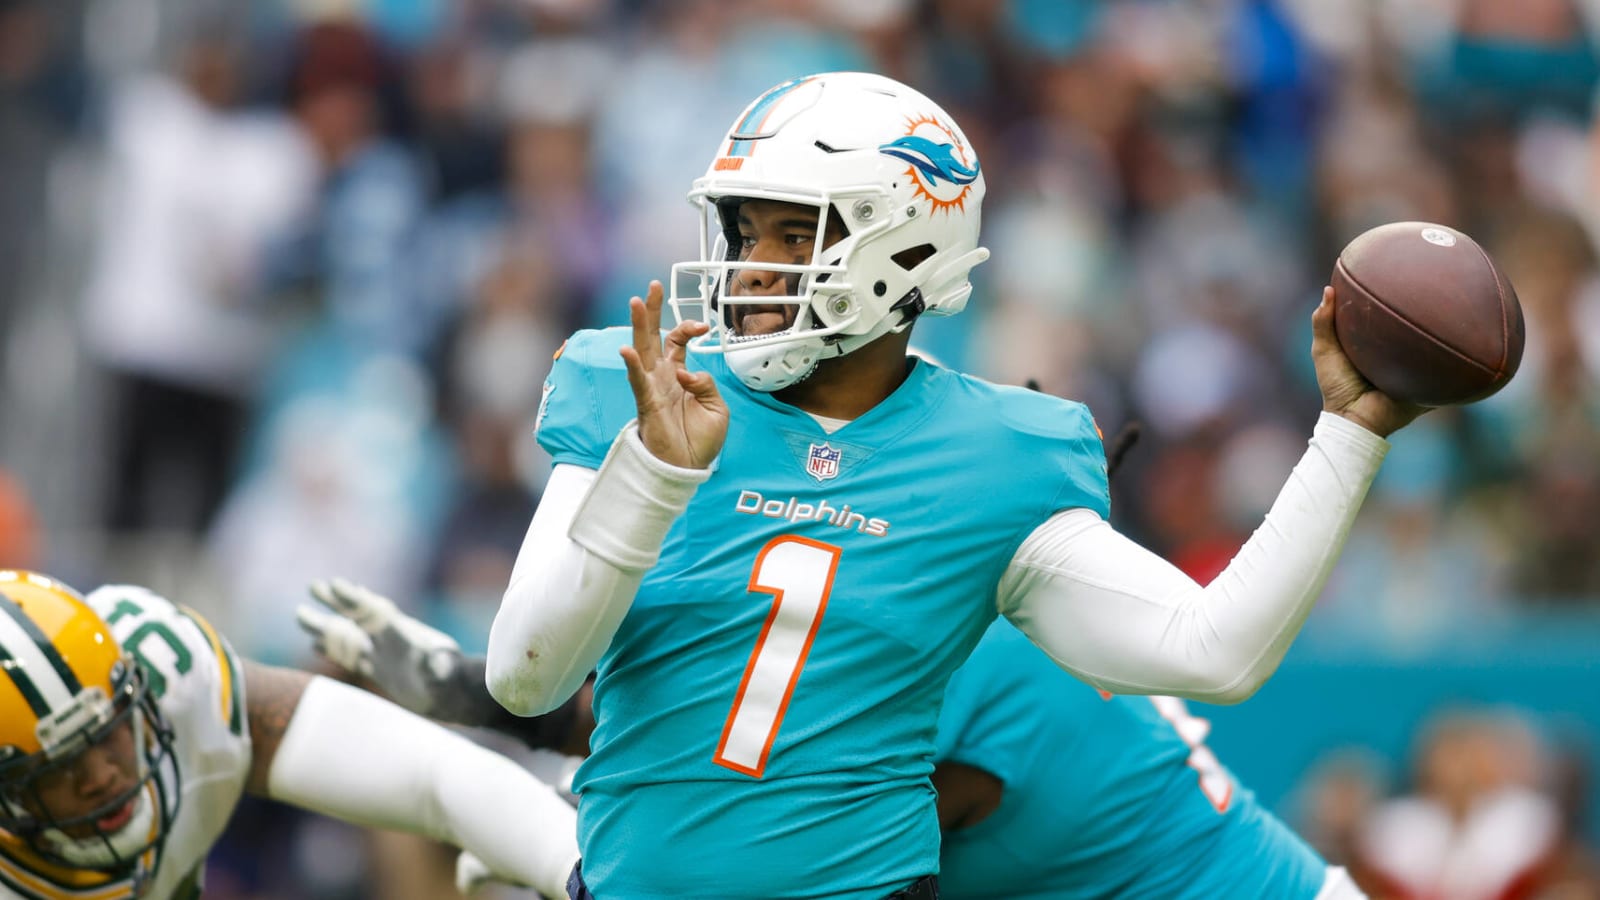 Report: Dolphins' Tua Tagovailoa still in concussion protocol, will miss Pro Bowl Games